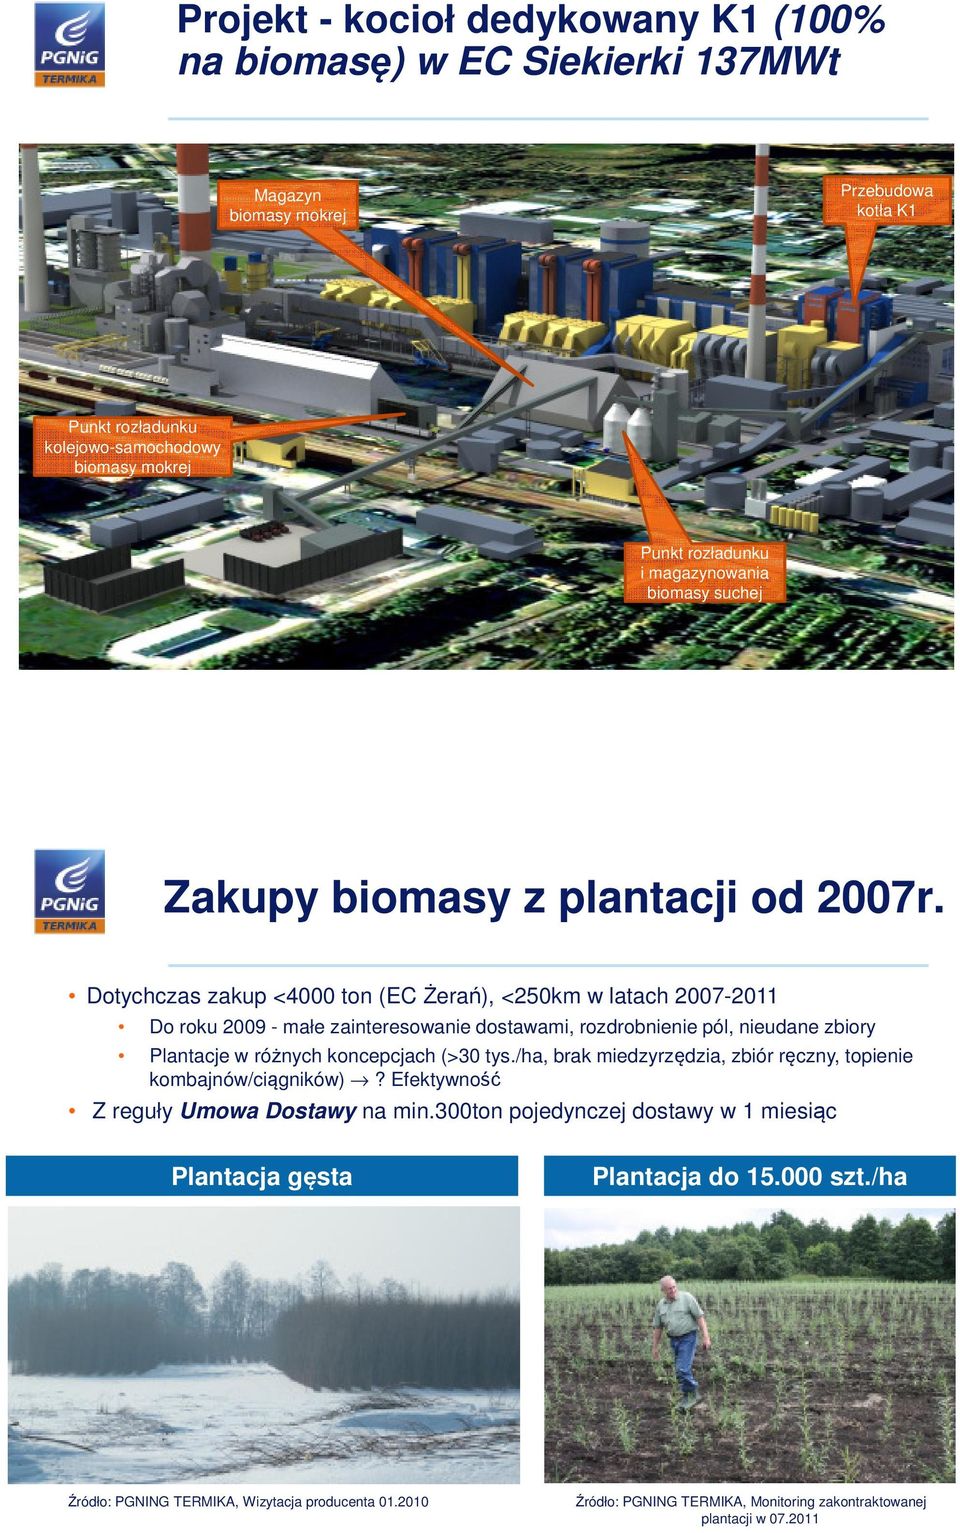 Dotychczas zakup <4000 ton (EC Żerań), <250km w latach 2007-2011 Do roku 2009 - małe zainteresowanie dostawami, rozdrobnienie pól, nieudane zbiory Plantacje w różnych koncepcjach (>30 tys.